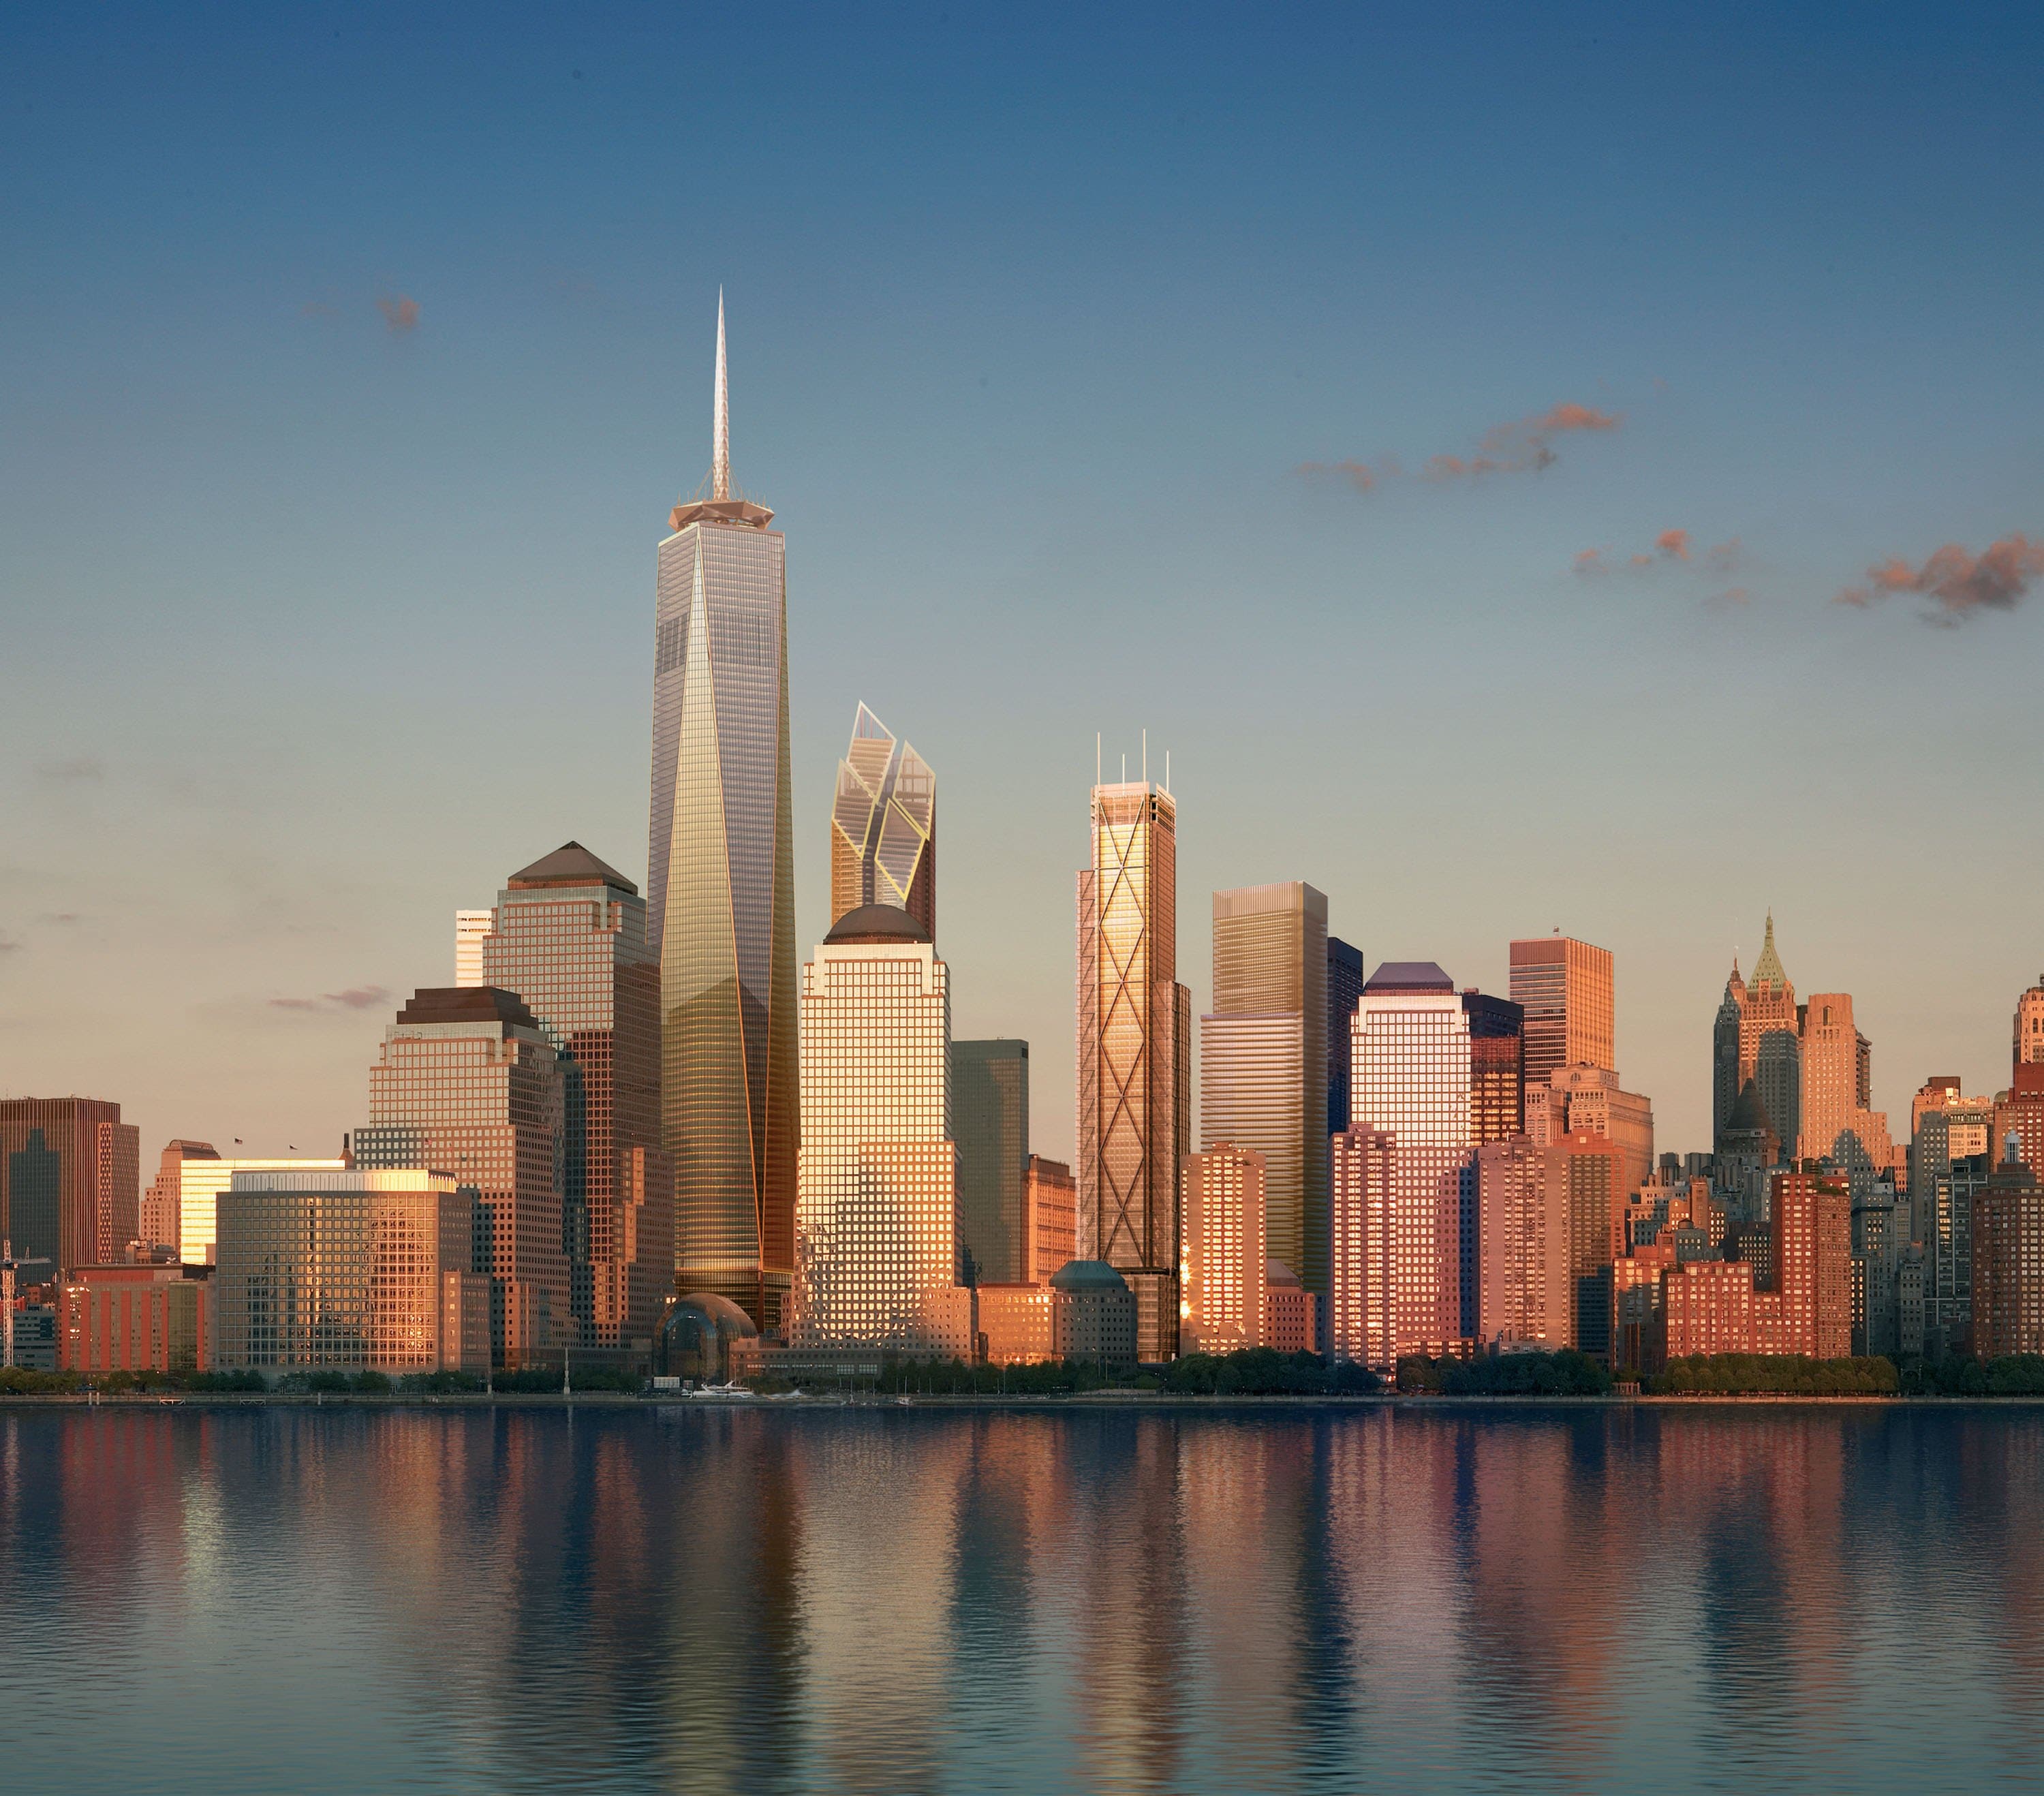 Un'immagine dell'One World Trade Center, imponente edificio costruito dove un tempo erano collocate le Torri gemelle